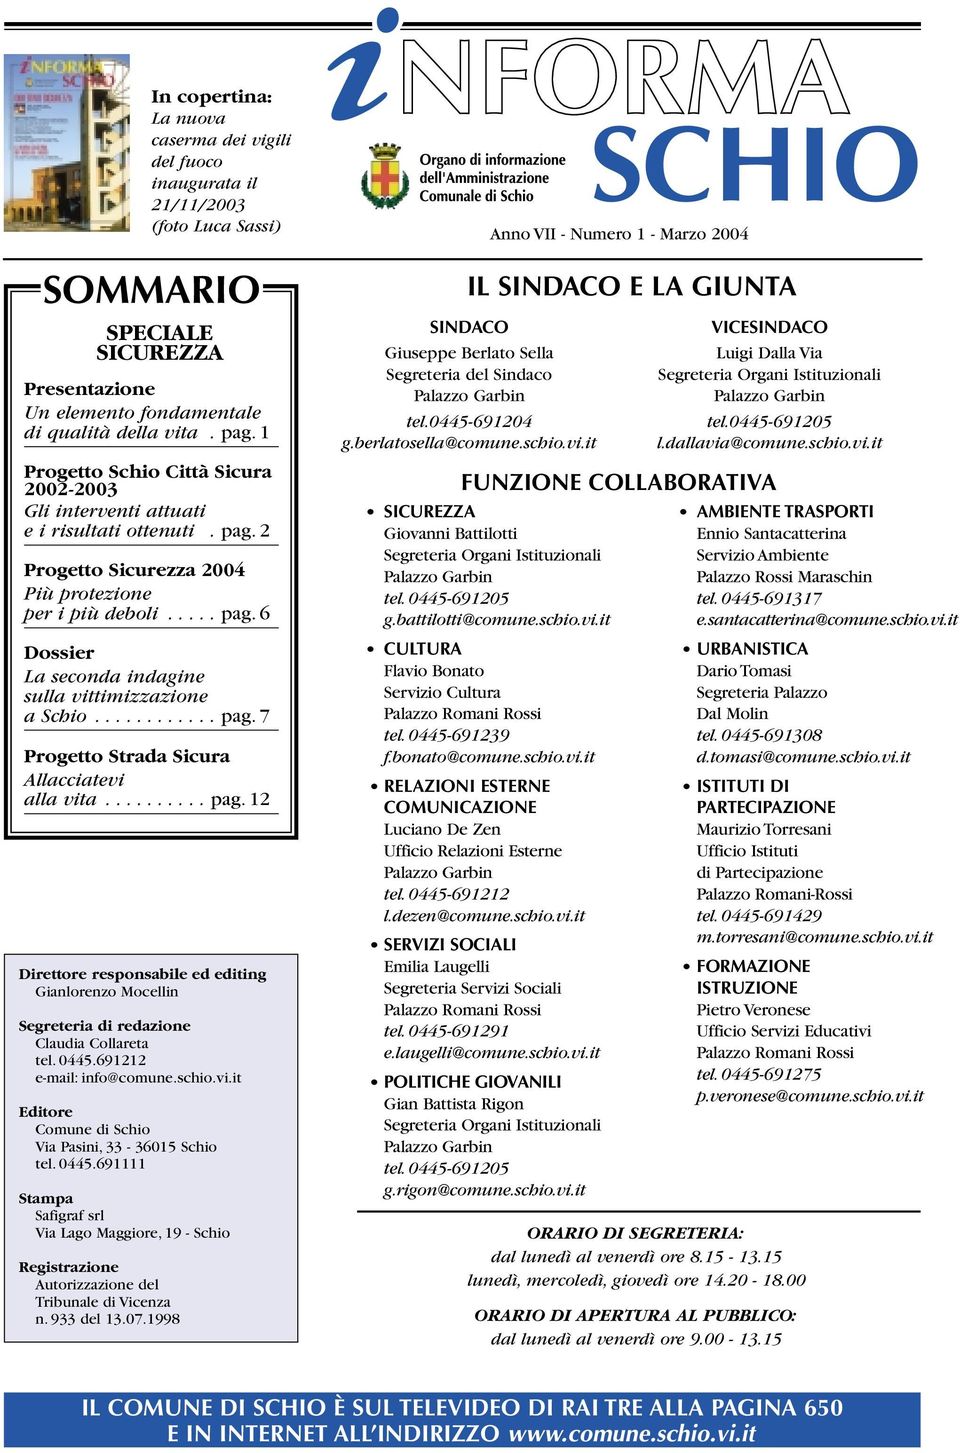 0445.691212 email: info@comune.schio.vi.it Editore Comune di Schio Via Pasini, 33 36015 Schio tel. 0445.